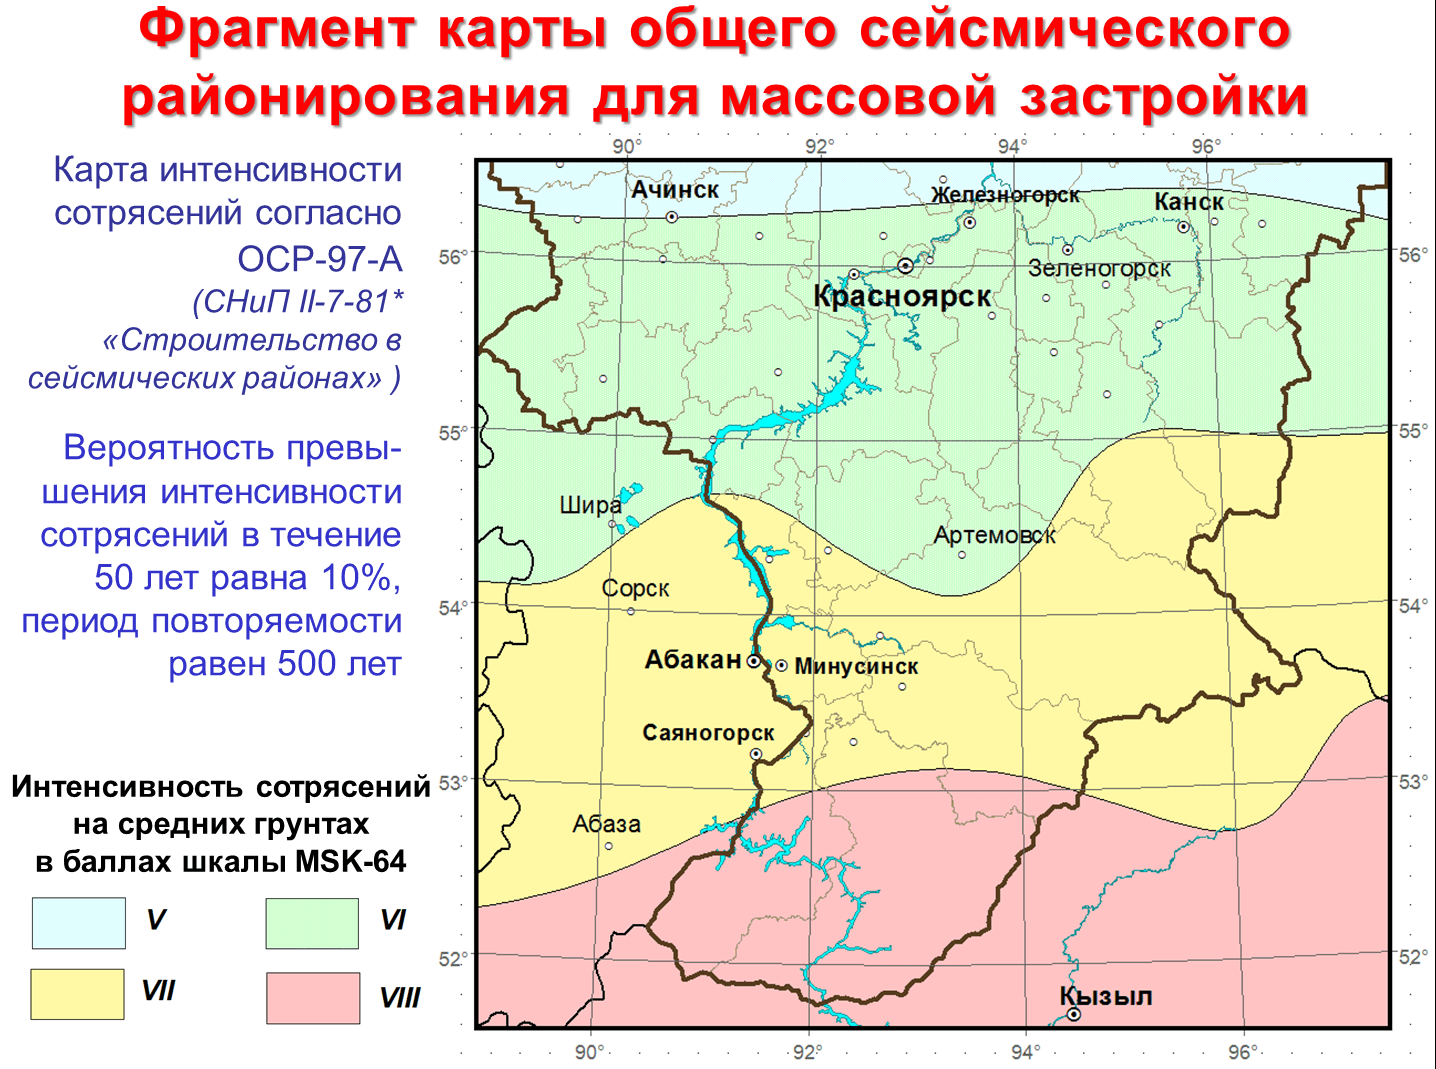 Сегодня карта общего сейсмического районирования выглядит так, но ее хотят переделать и перенести Красноярск в зону 7-бальных землетрясений